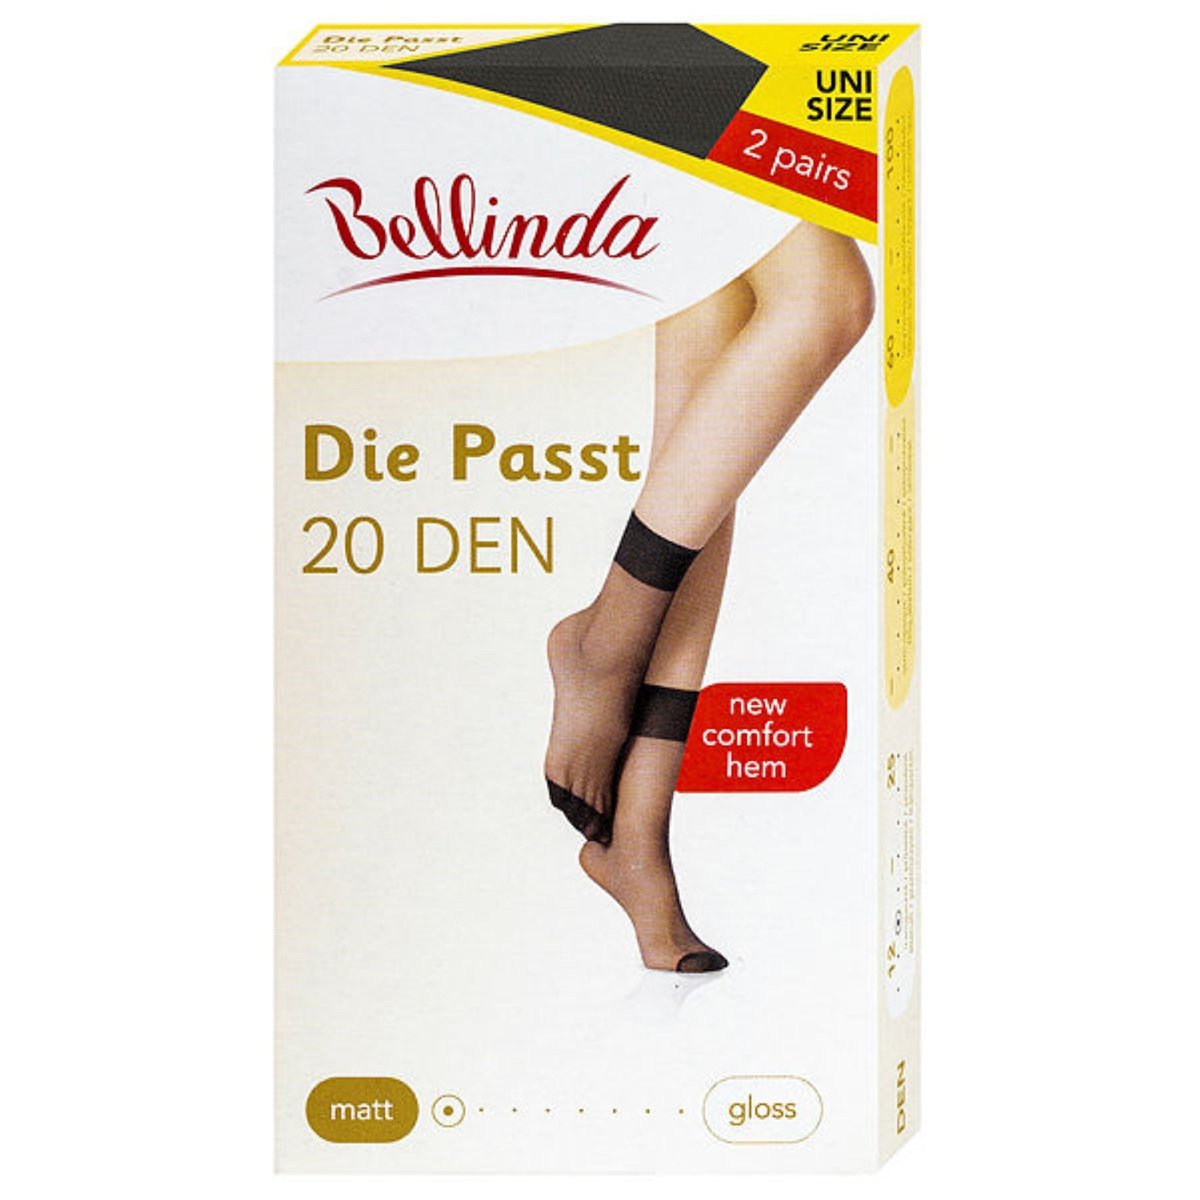 Bellinda Silonkové ponožky DIE PASST, černé, vel. UNI, 2 ks